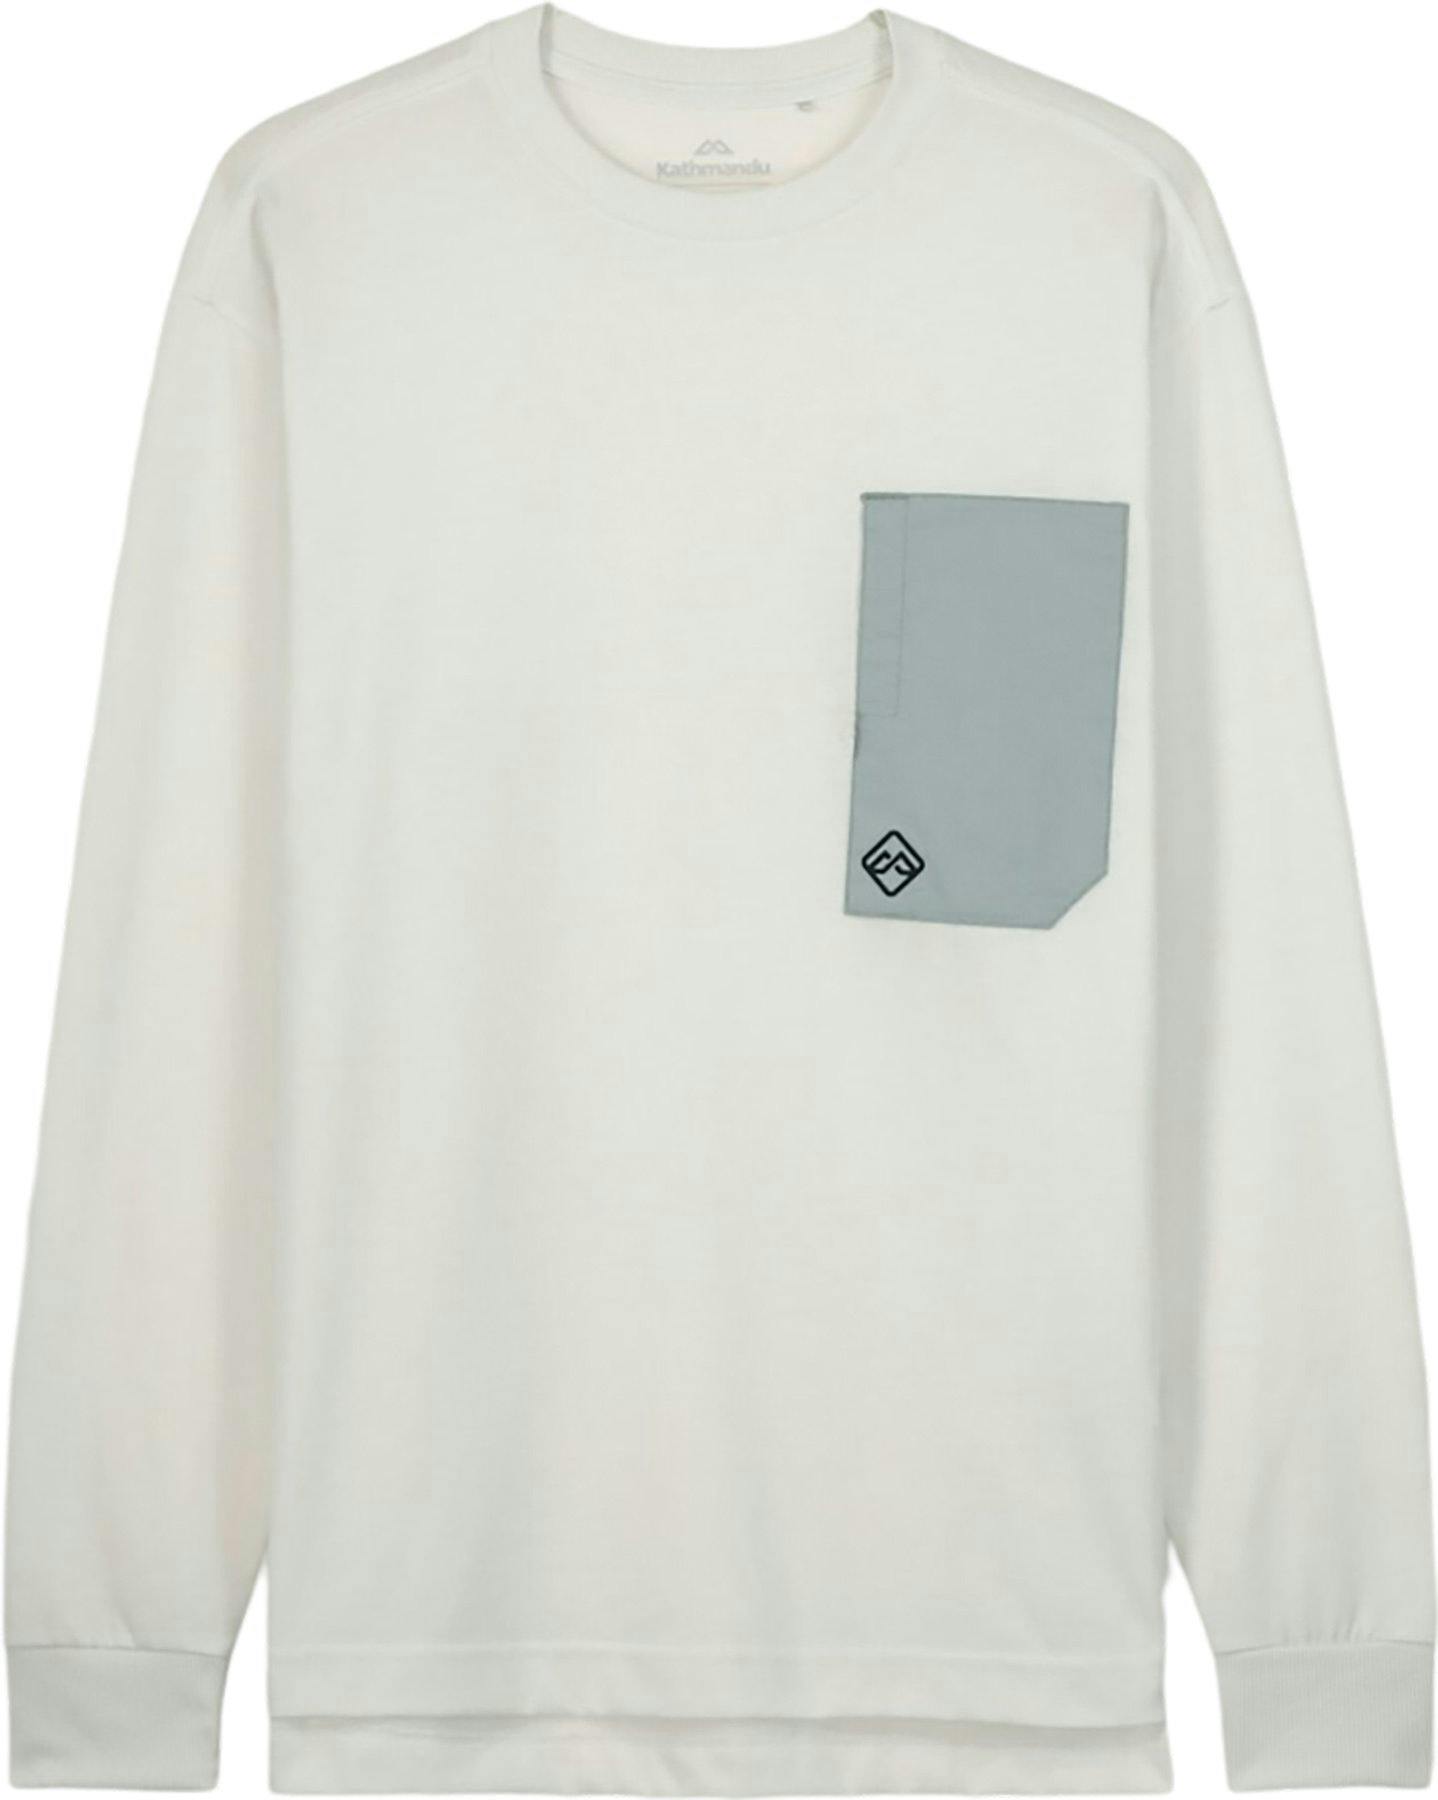 Product image for Vander Long Sleeve Pocket T-Shirt - Men’s